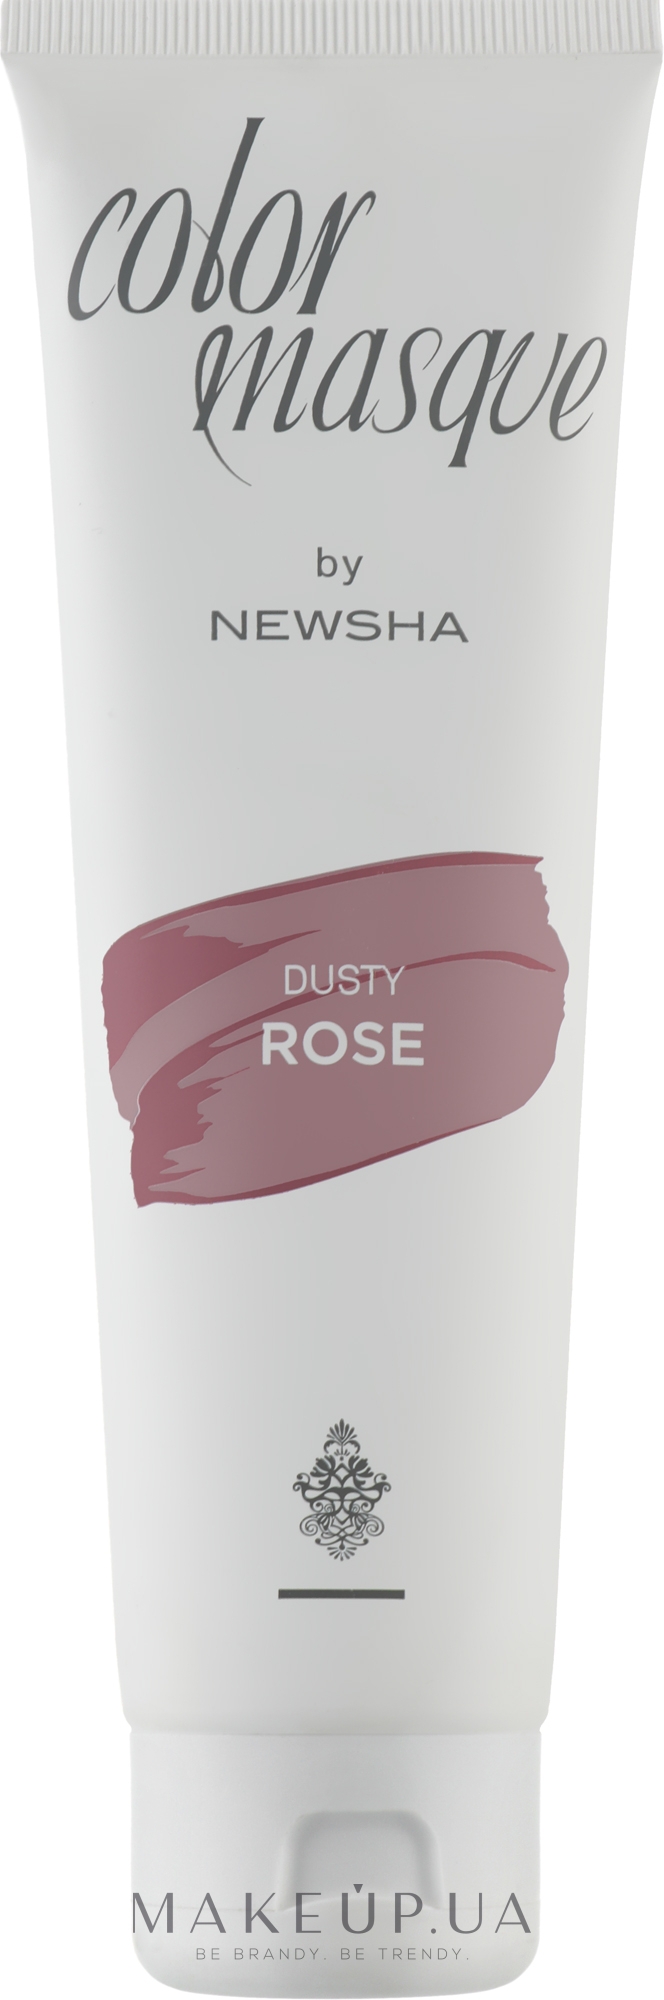 Цветная маска для волос - Newsha Color Masque Dusty Rose  — фото 150ml